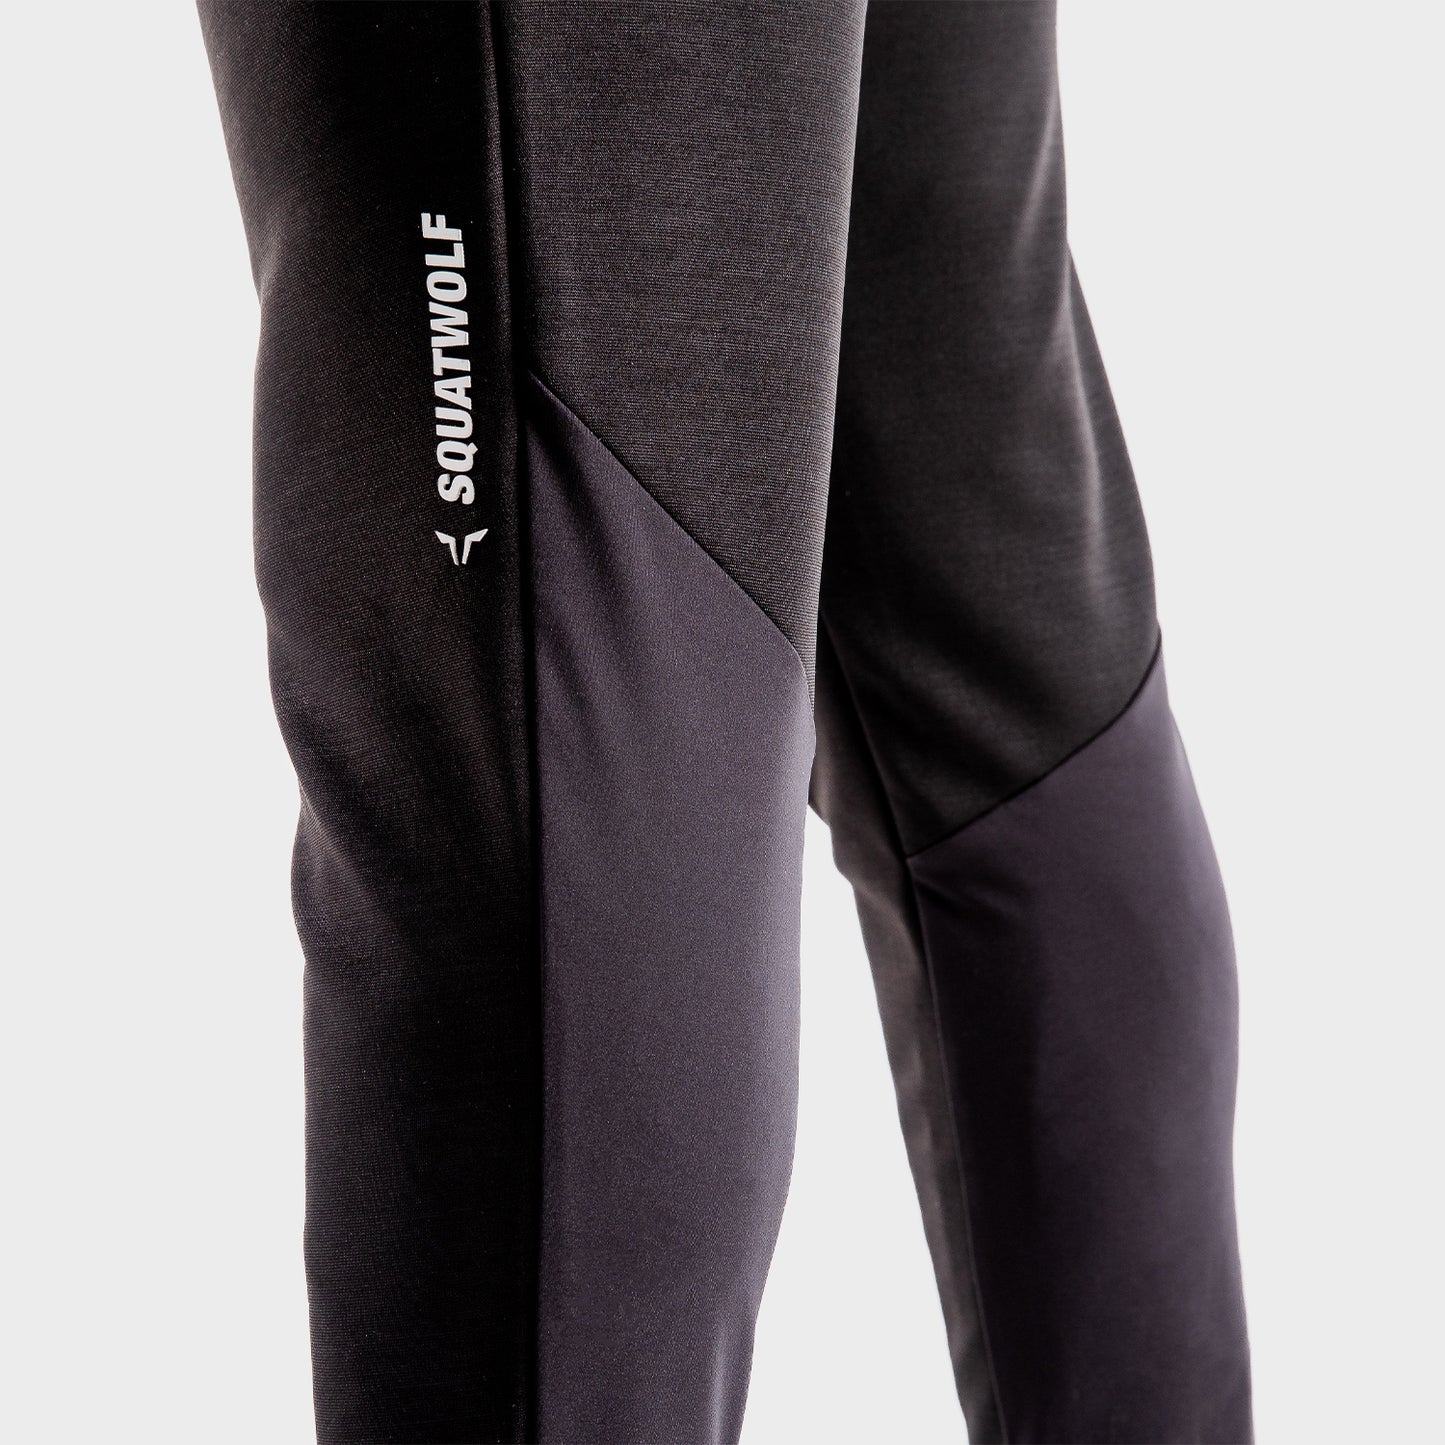 squatwolf-workout-pants-for-men-flux-joggers-black-gym-wear